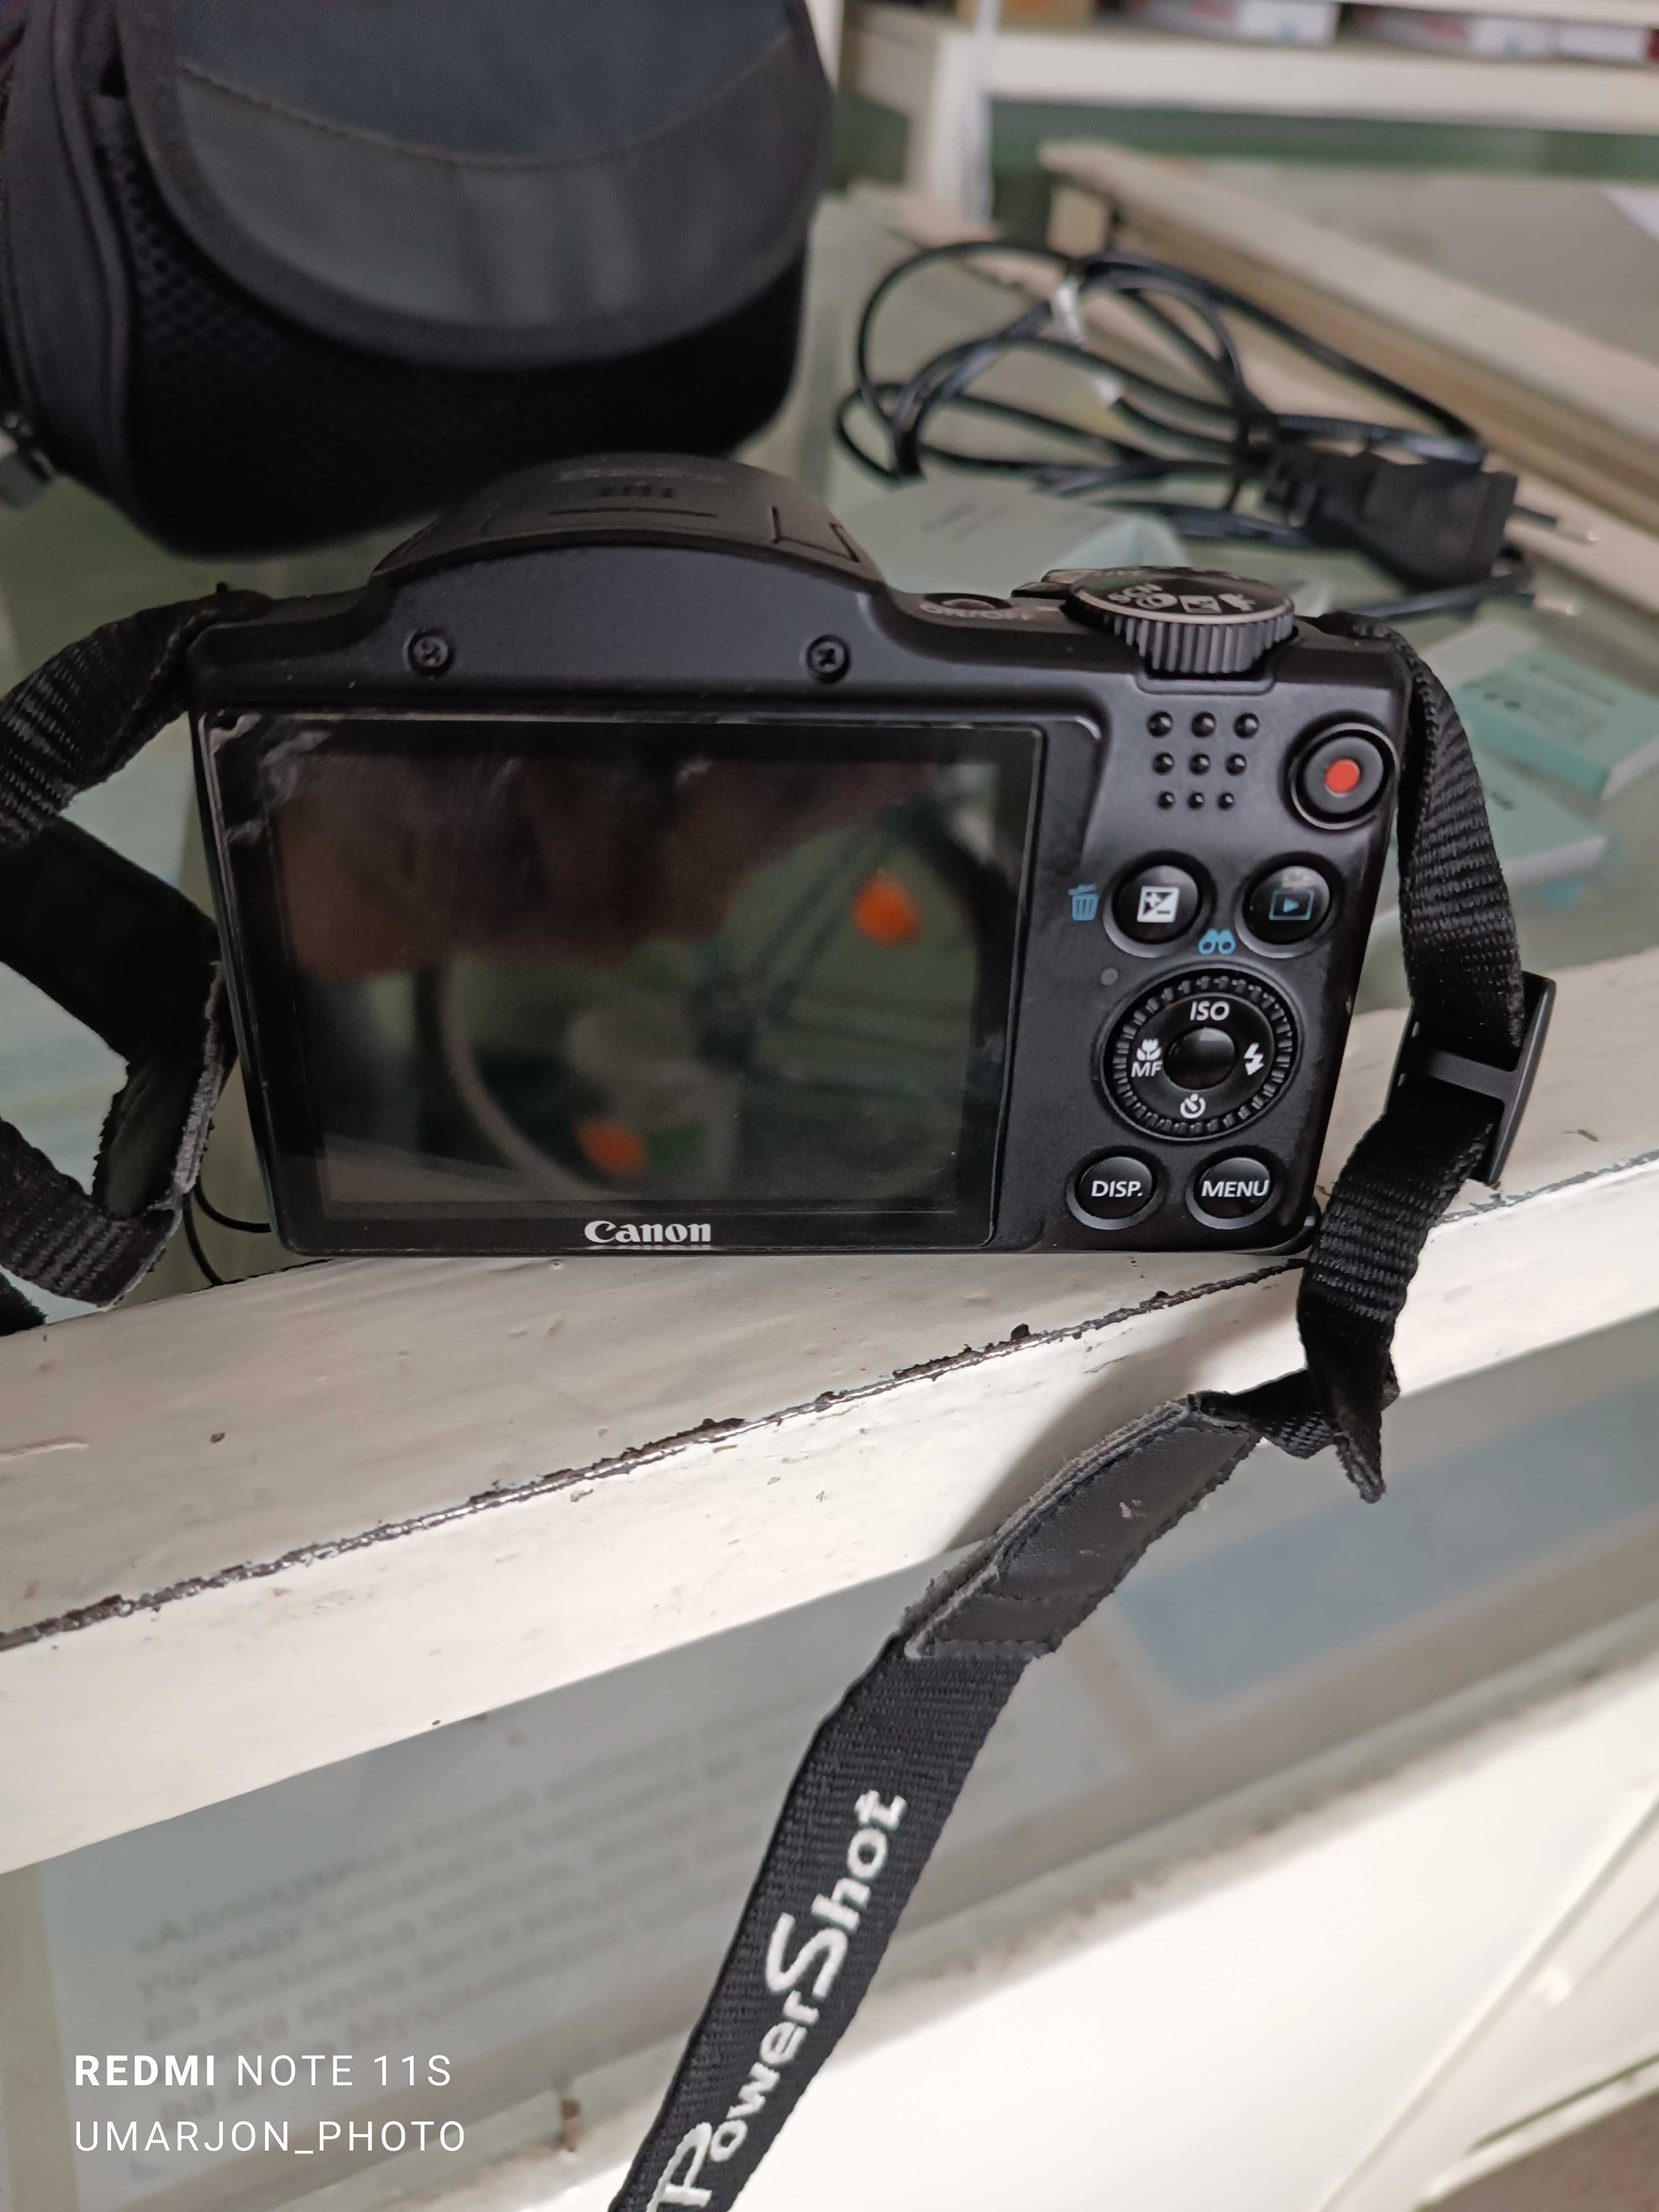 Canon sx500is fotoaparat rasm uchun zor xolatda